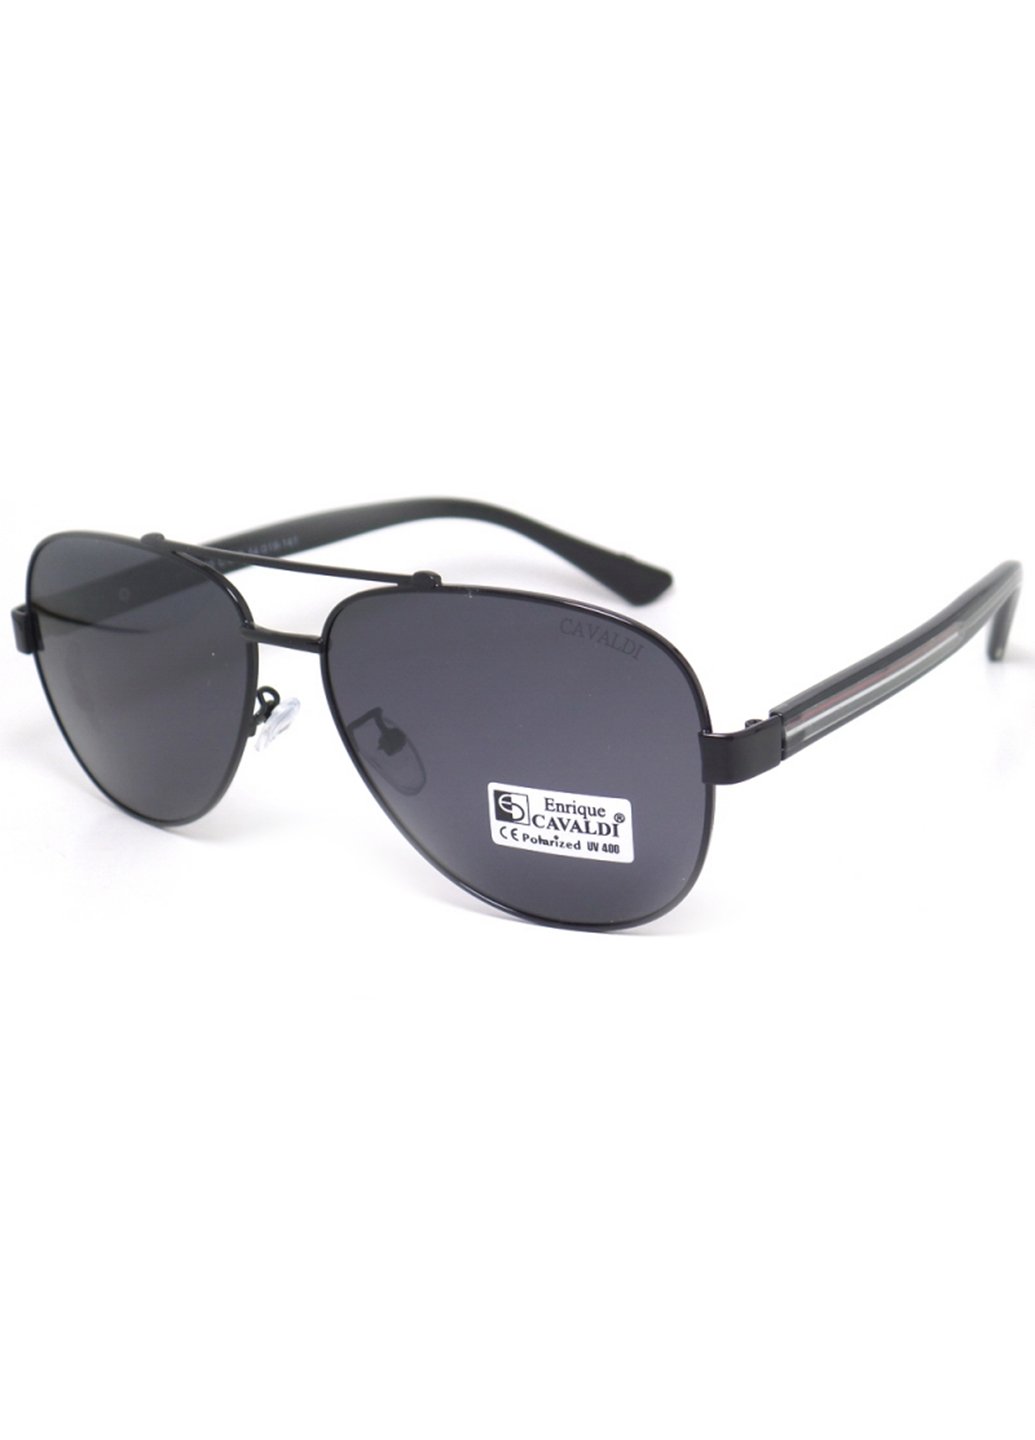 Купить Мужские солнцезащитные очки Enrique Cavaldi EC87050 150003 - Черный в интернет-магазине